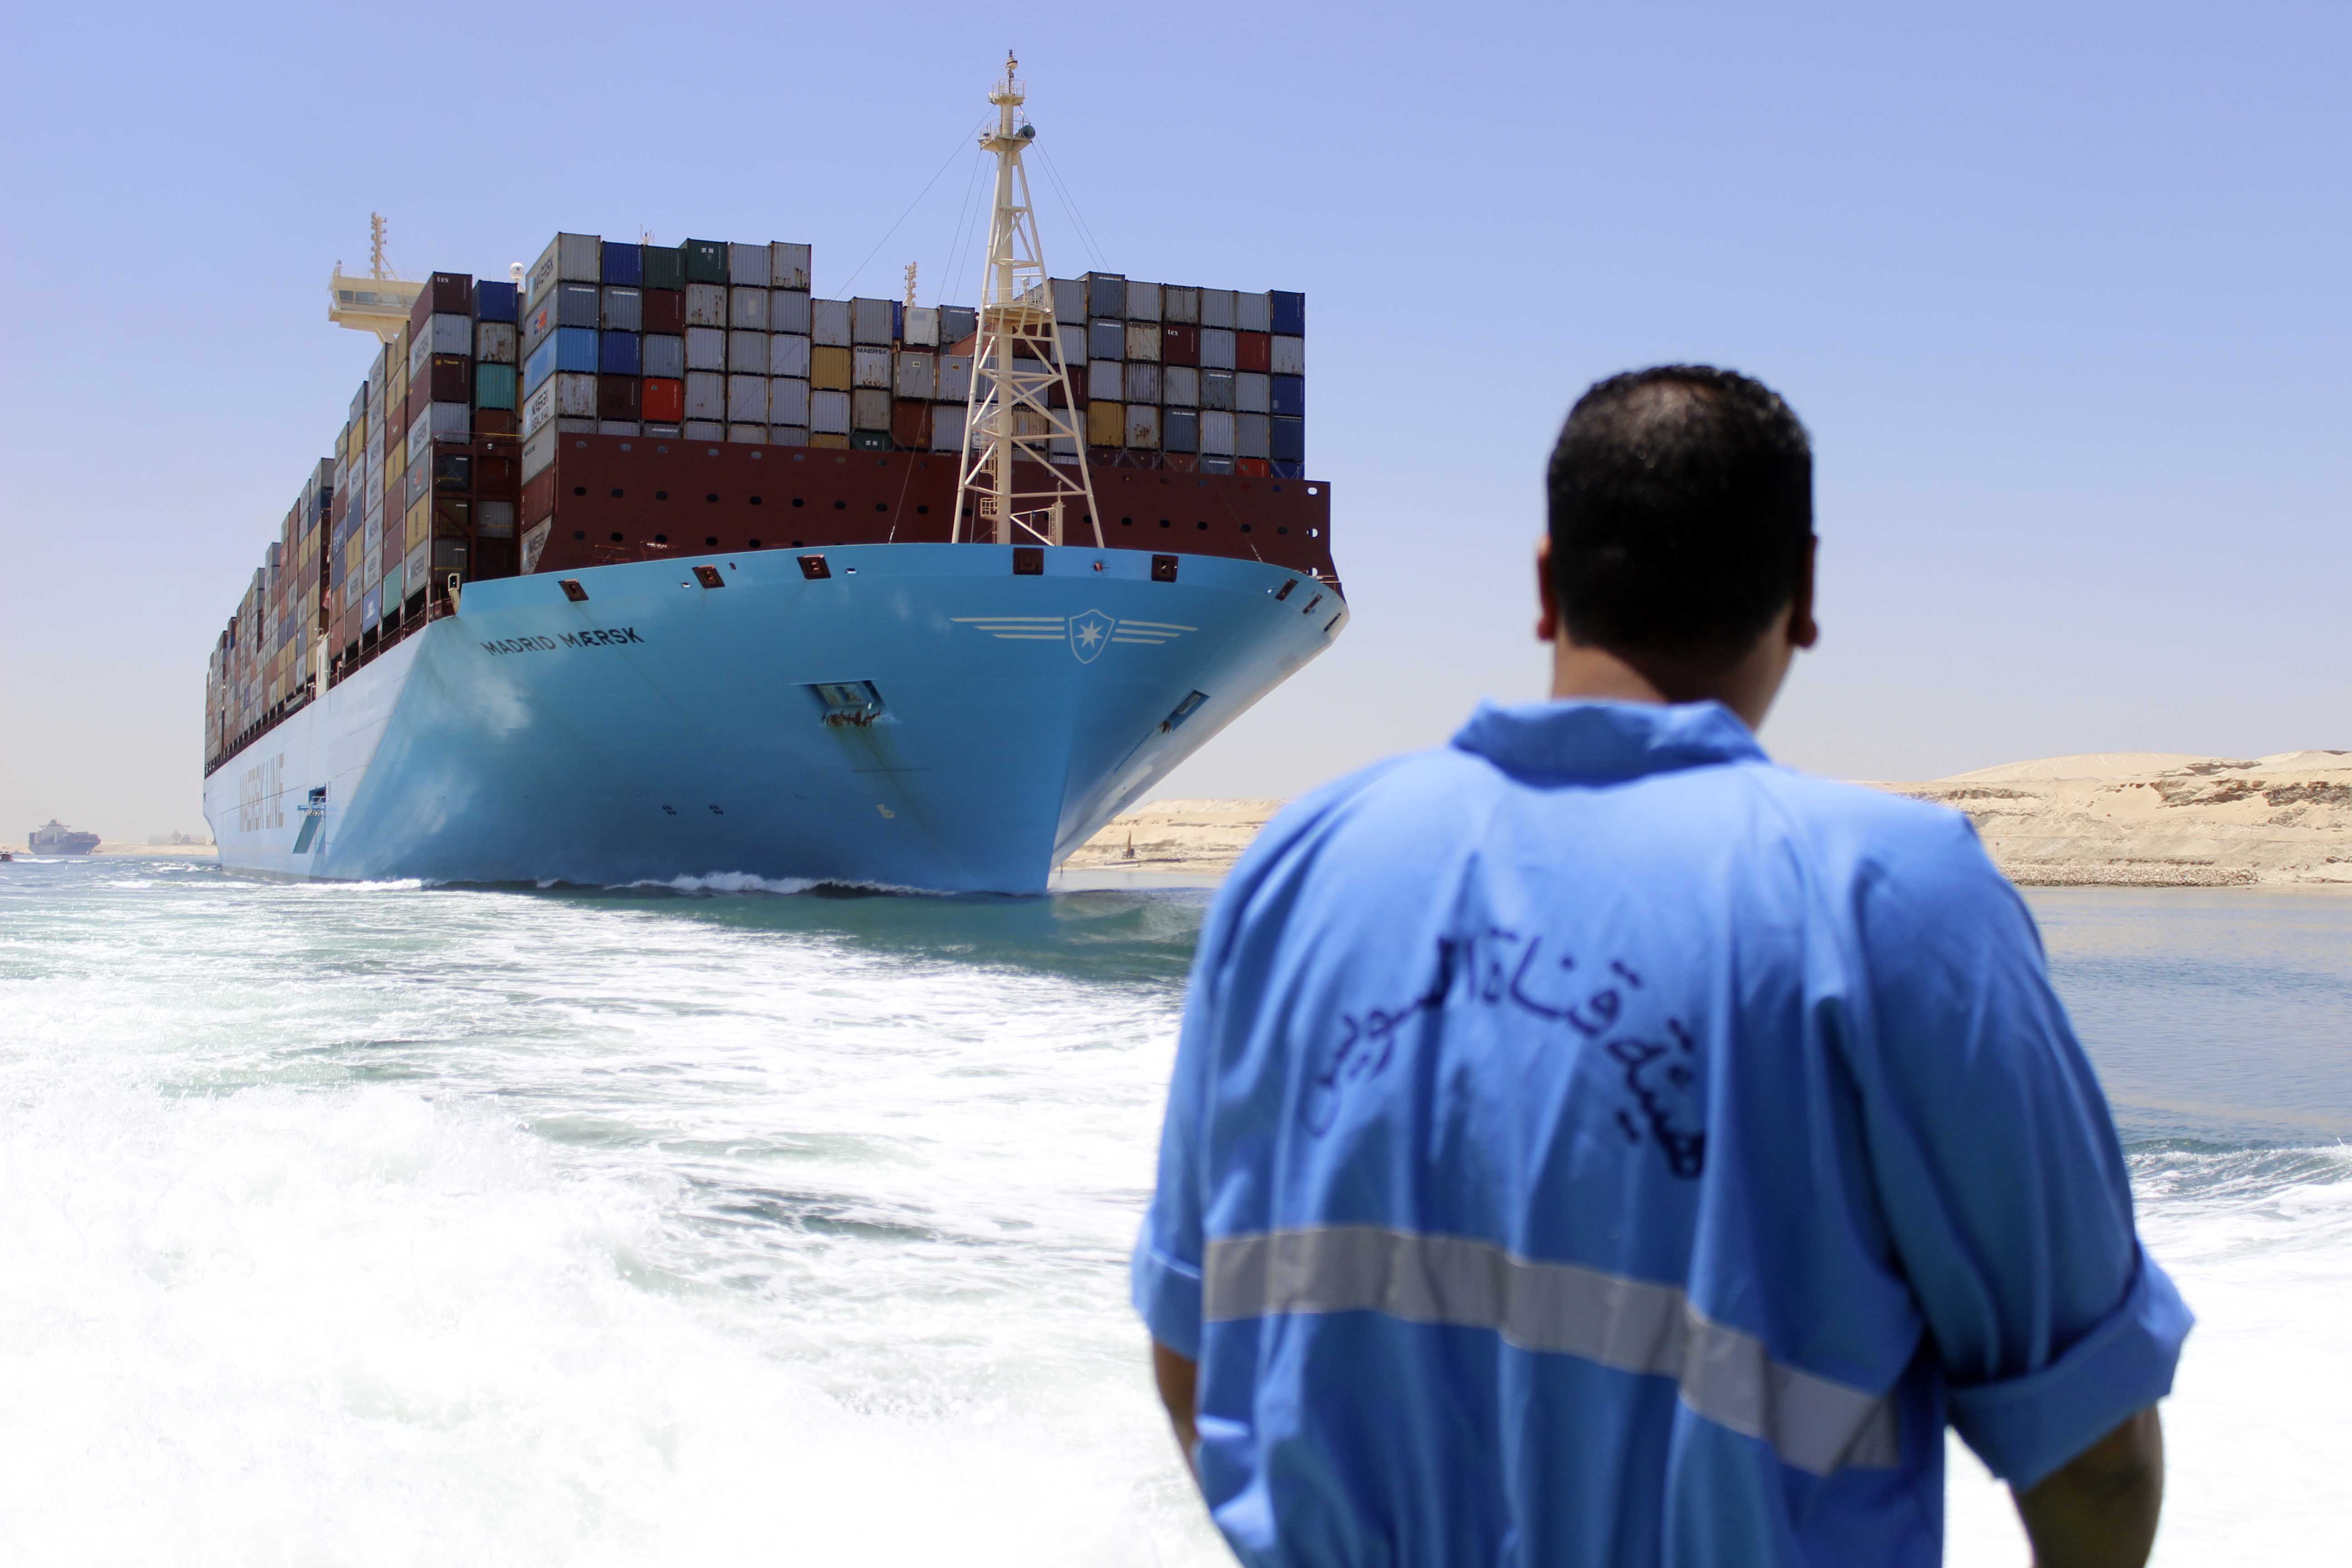 Madrid maersk ثان  أكبر  سفينة  حاويات في  العالم  تعبر  قناة السويس - تصوير  محمد عوض   (1)